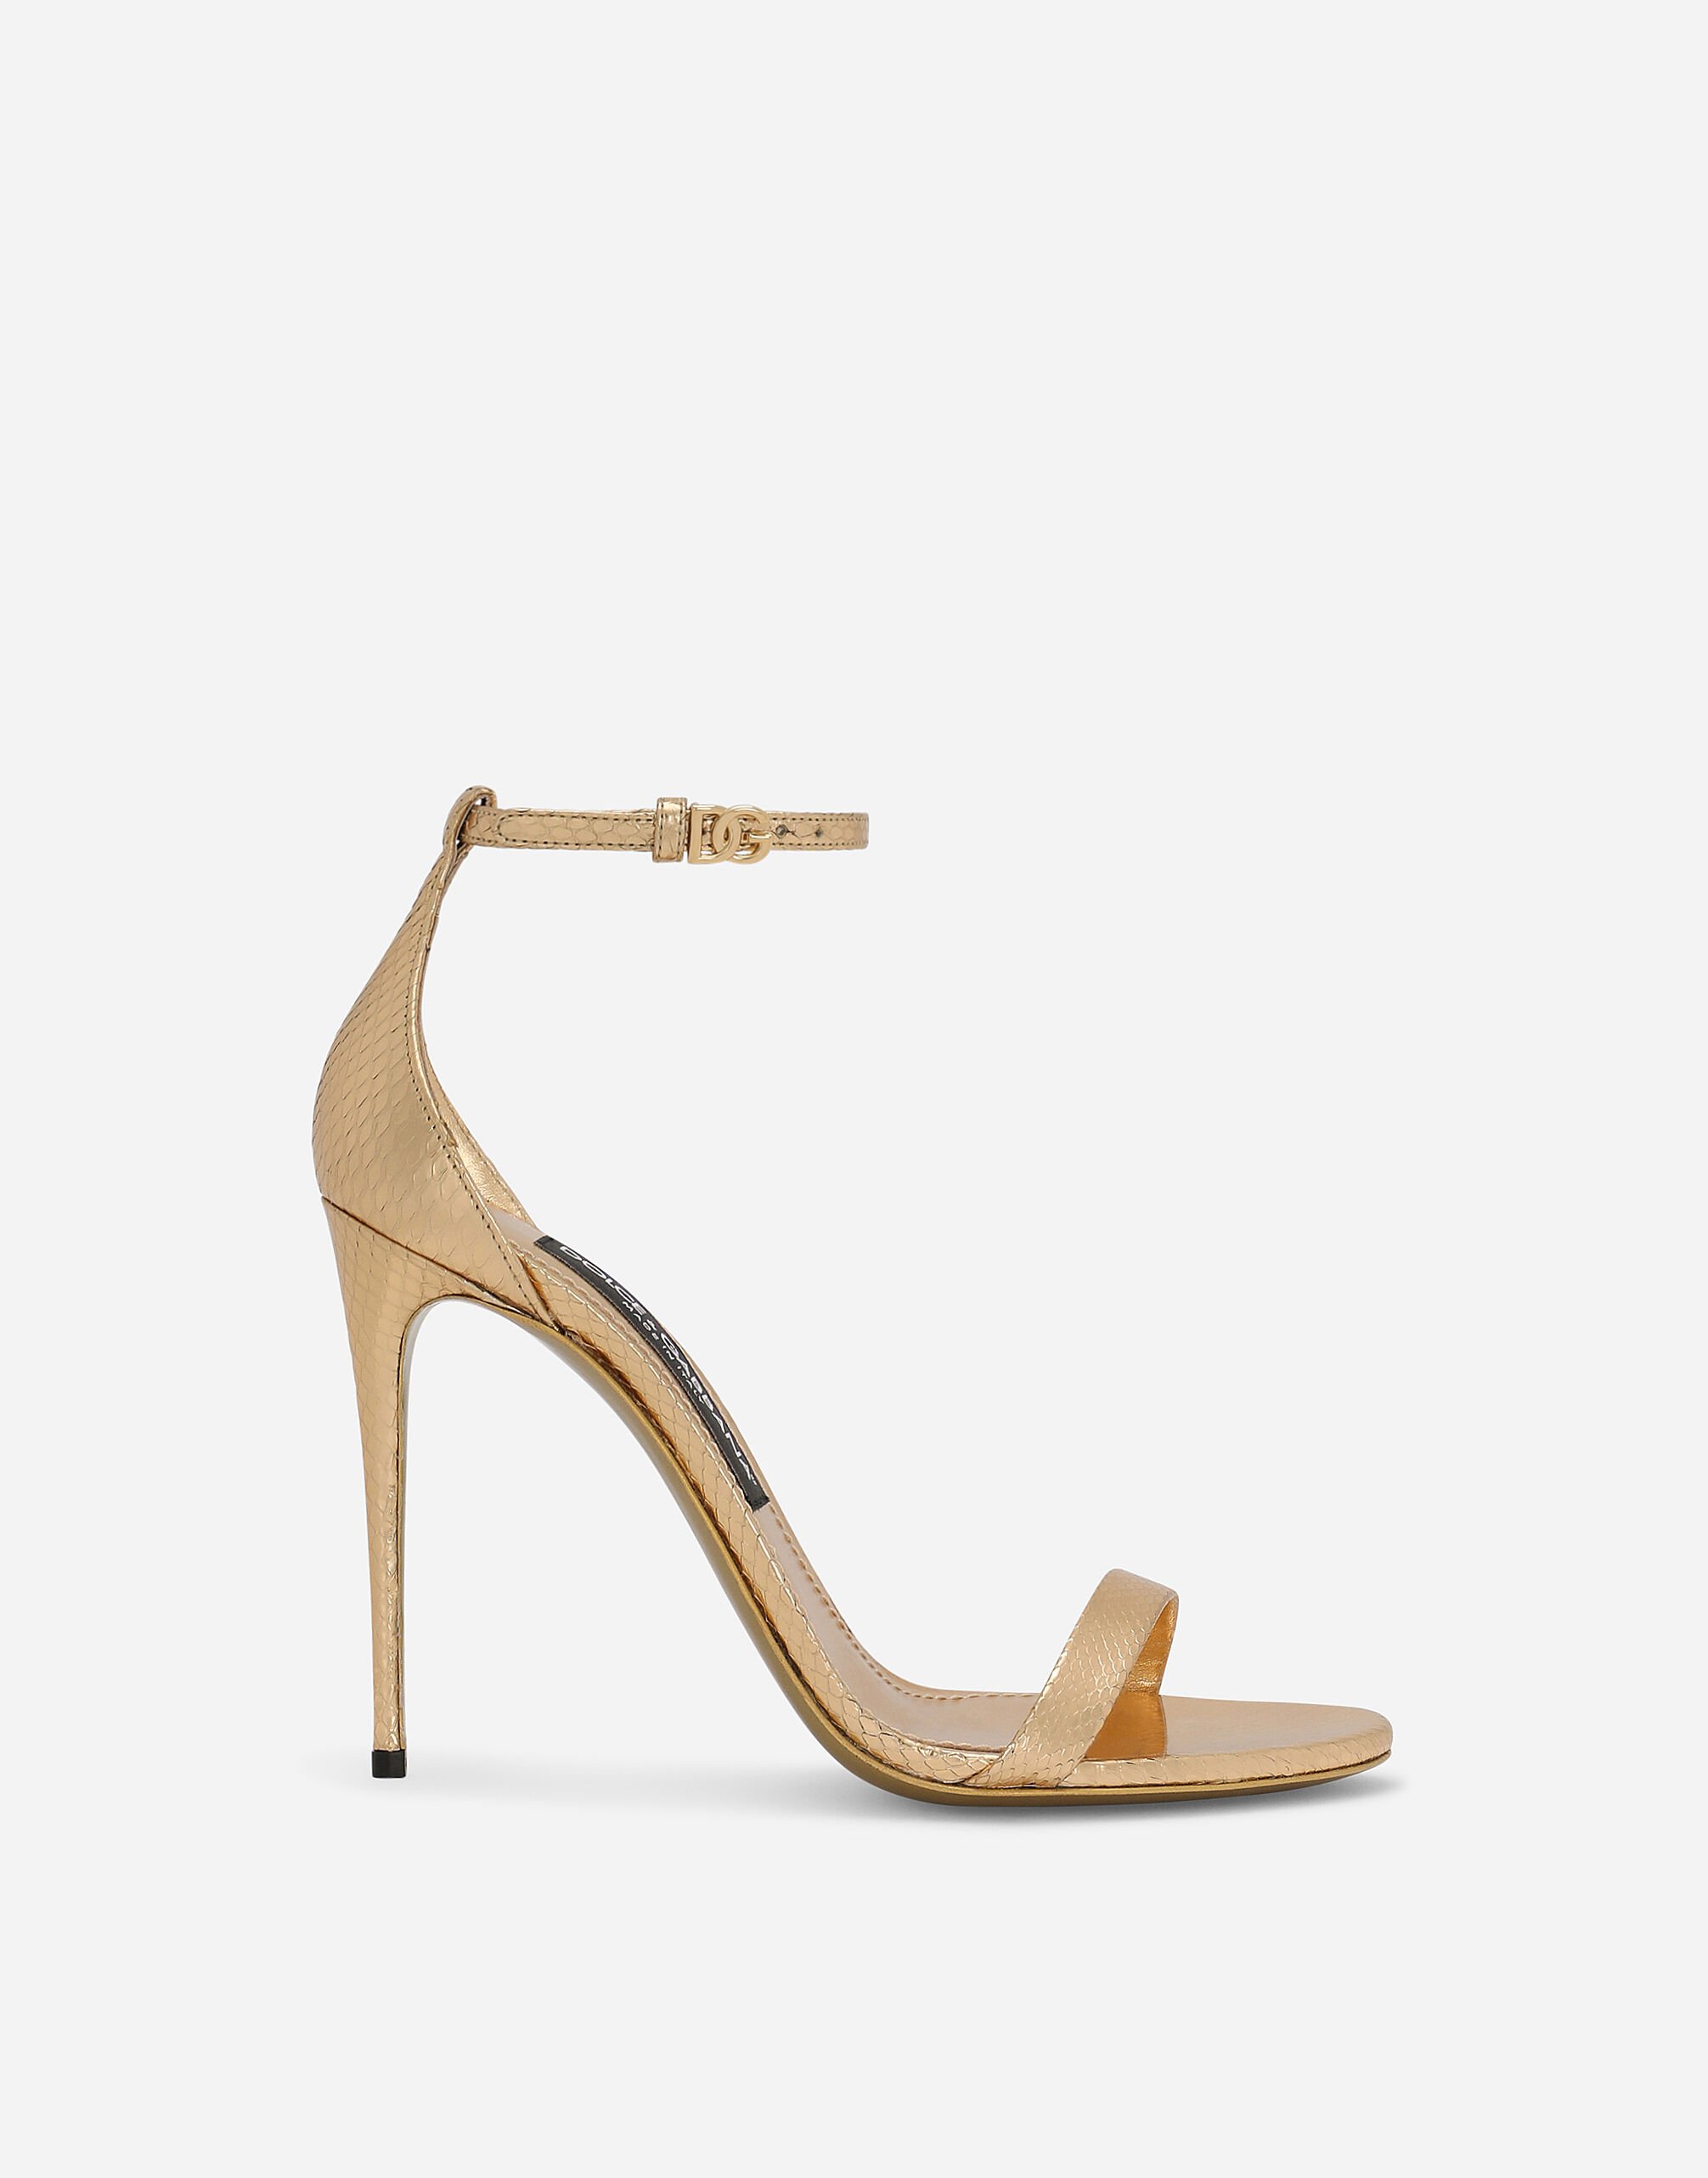 Dolce & Gabbana Python skin sandals Print CR1751AV885